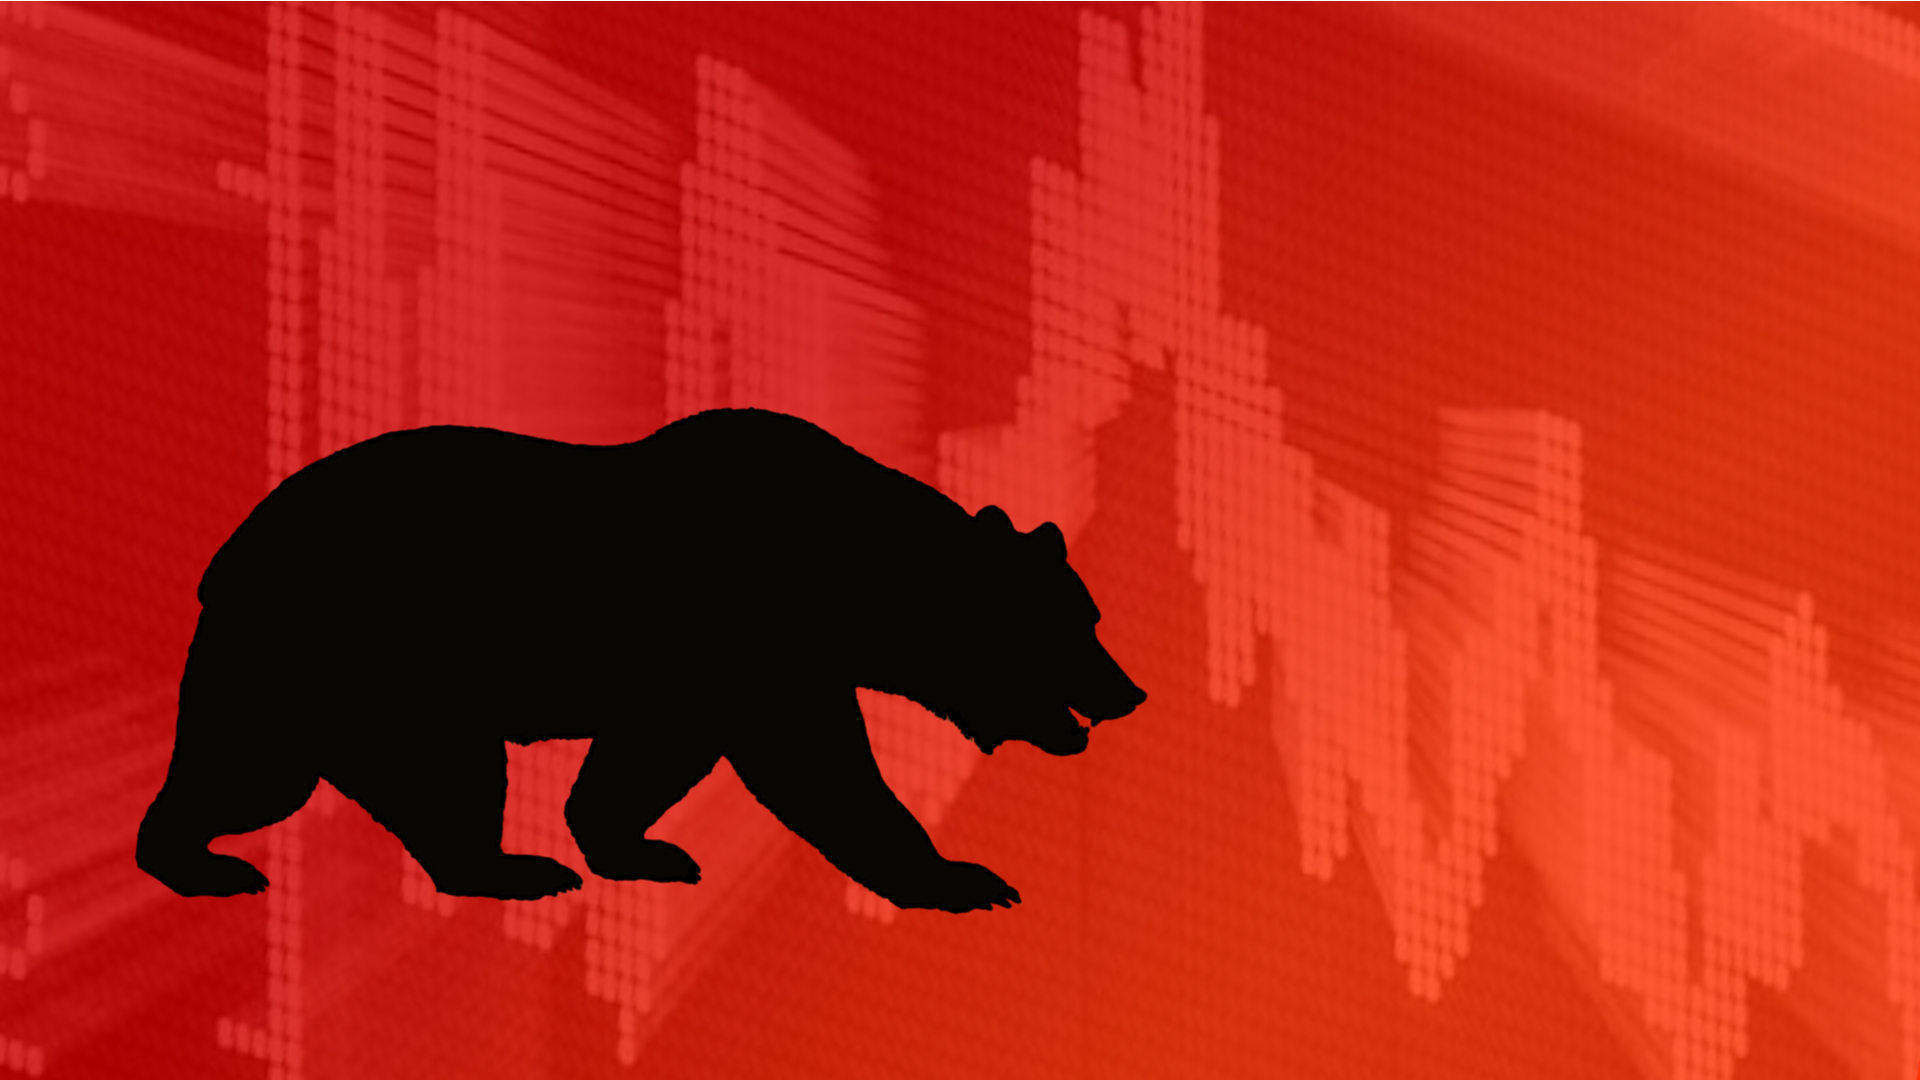 Ilustração de um urso, com gráficos vermelhos atrás, indicando a queda do Ibovespa.